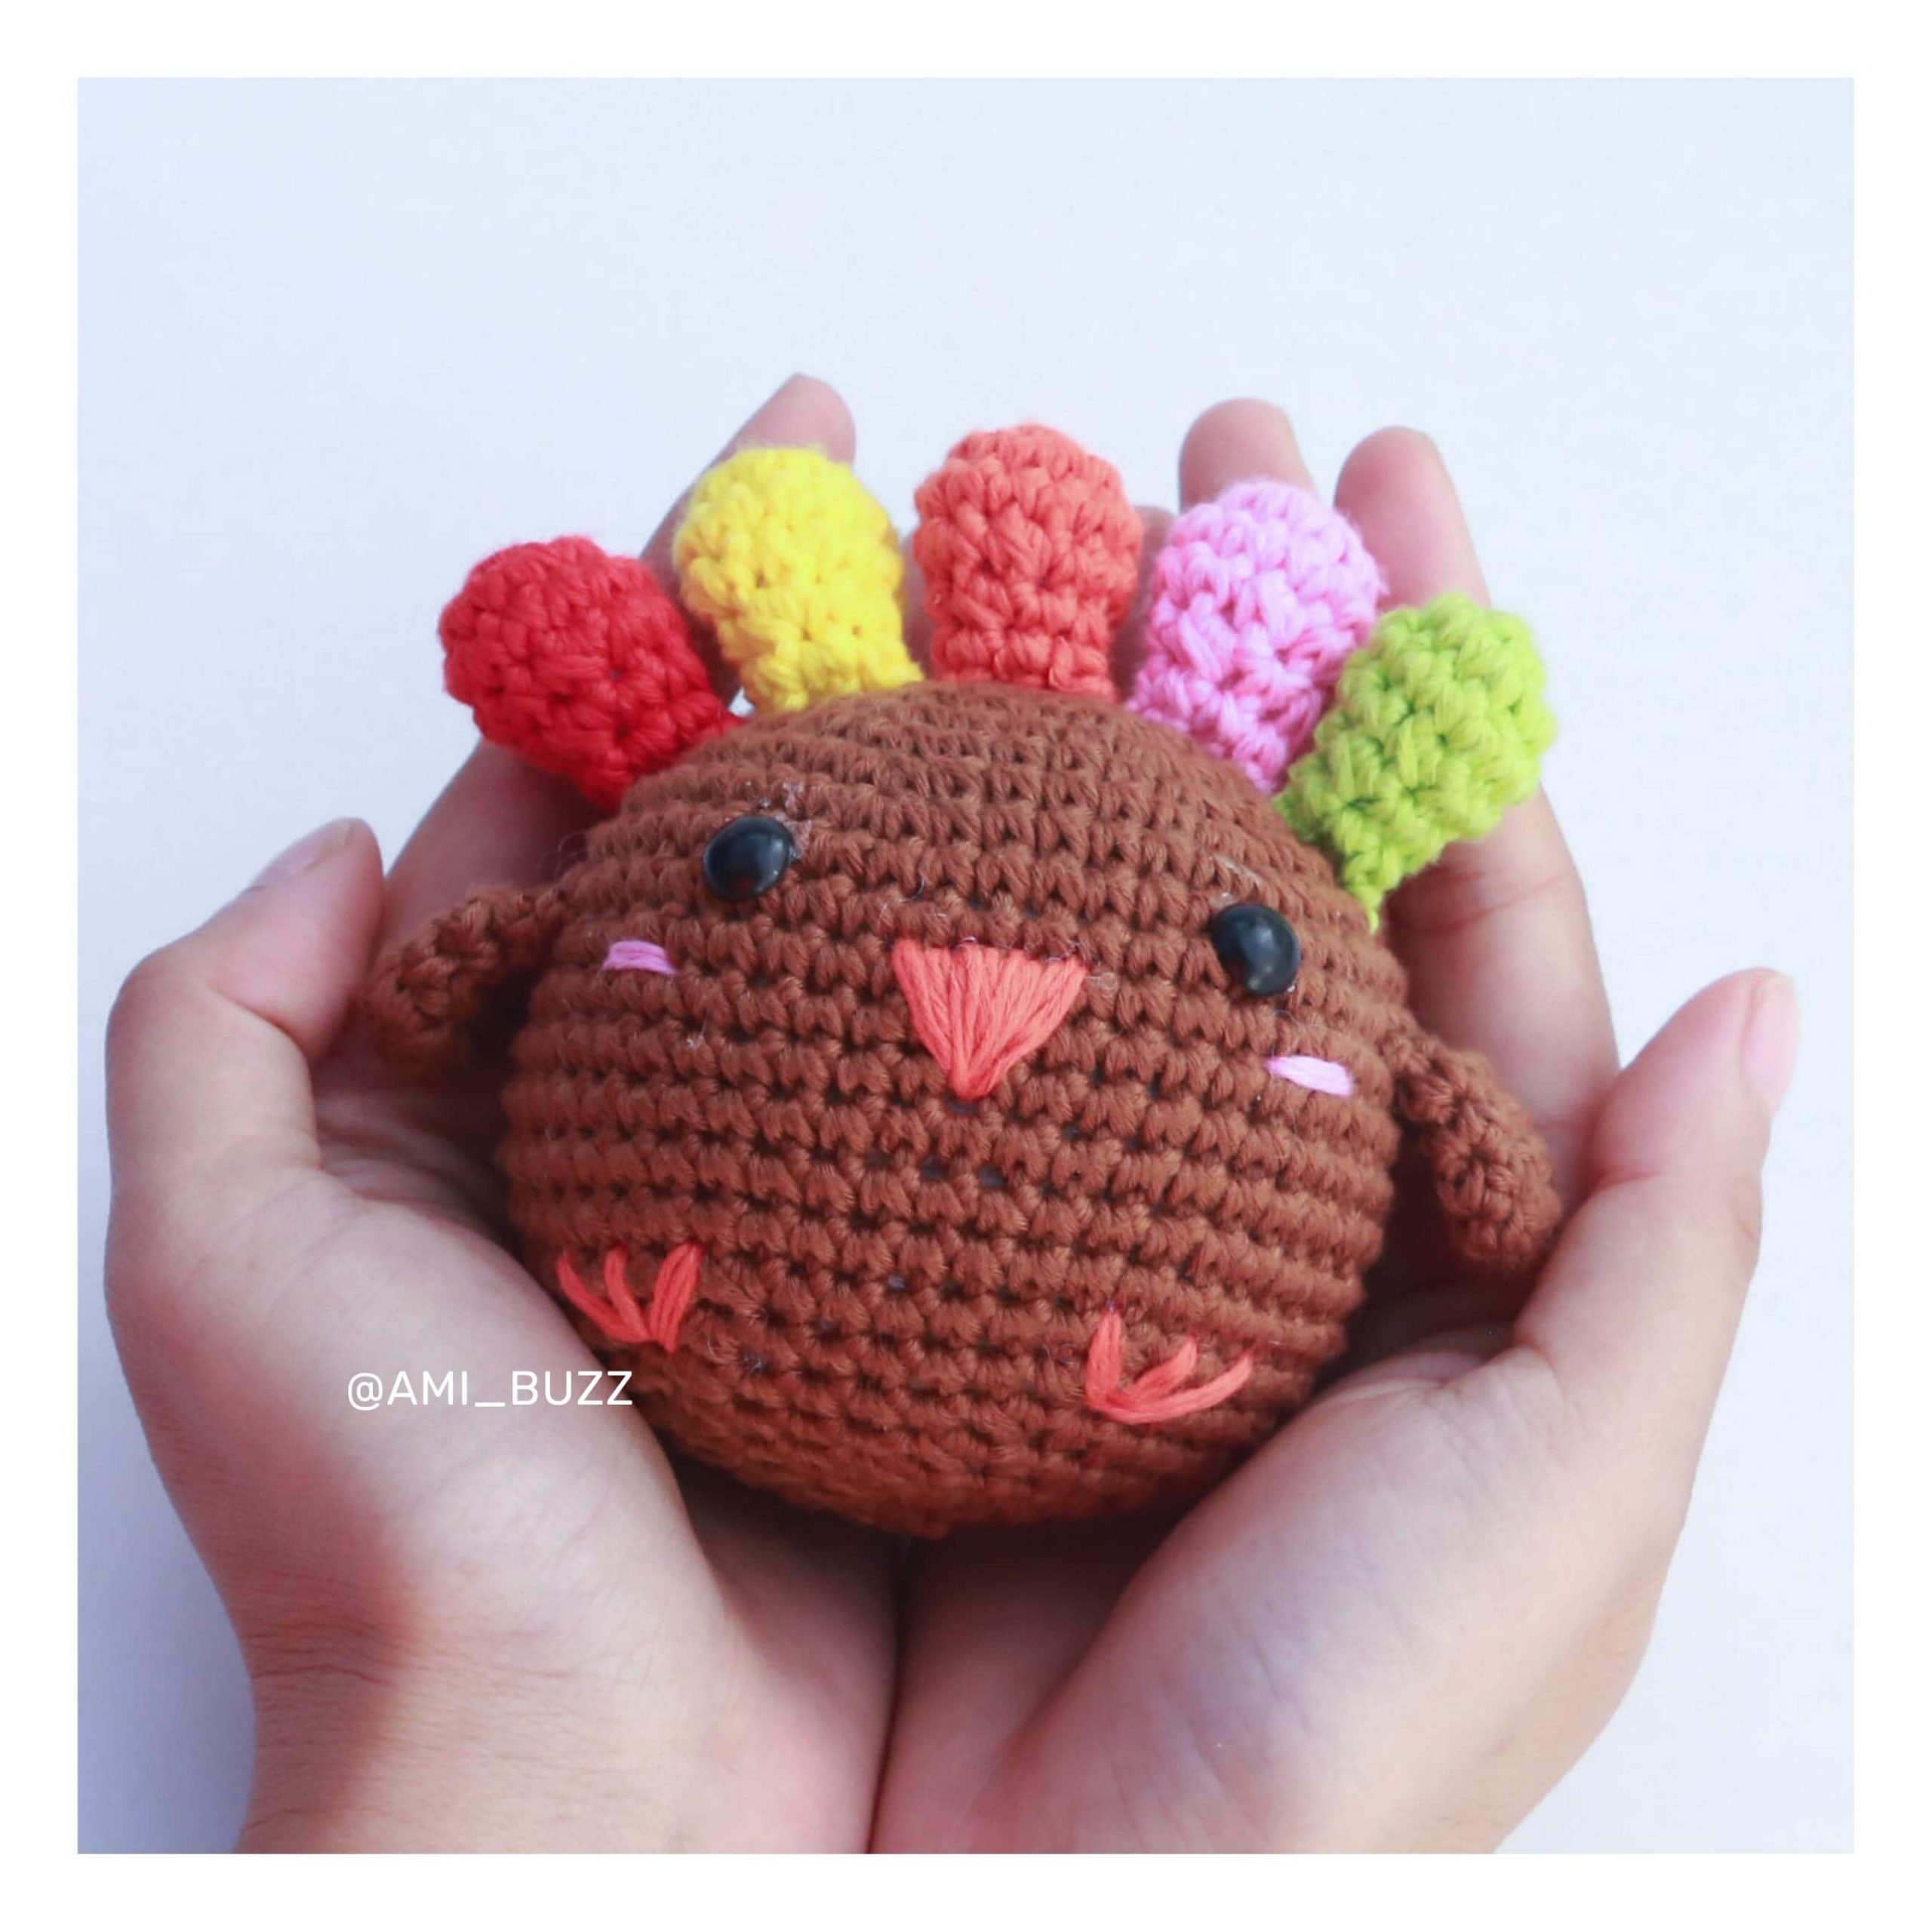 chicken-amigurumi-crochet-pattern-amibuzz (4)